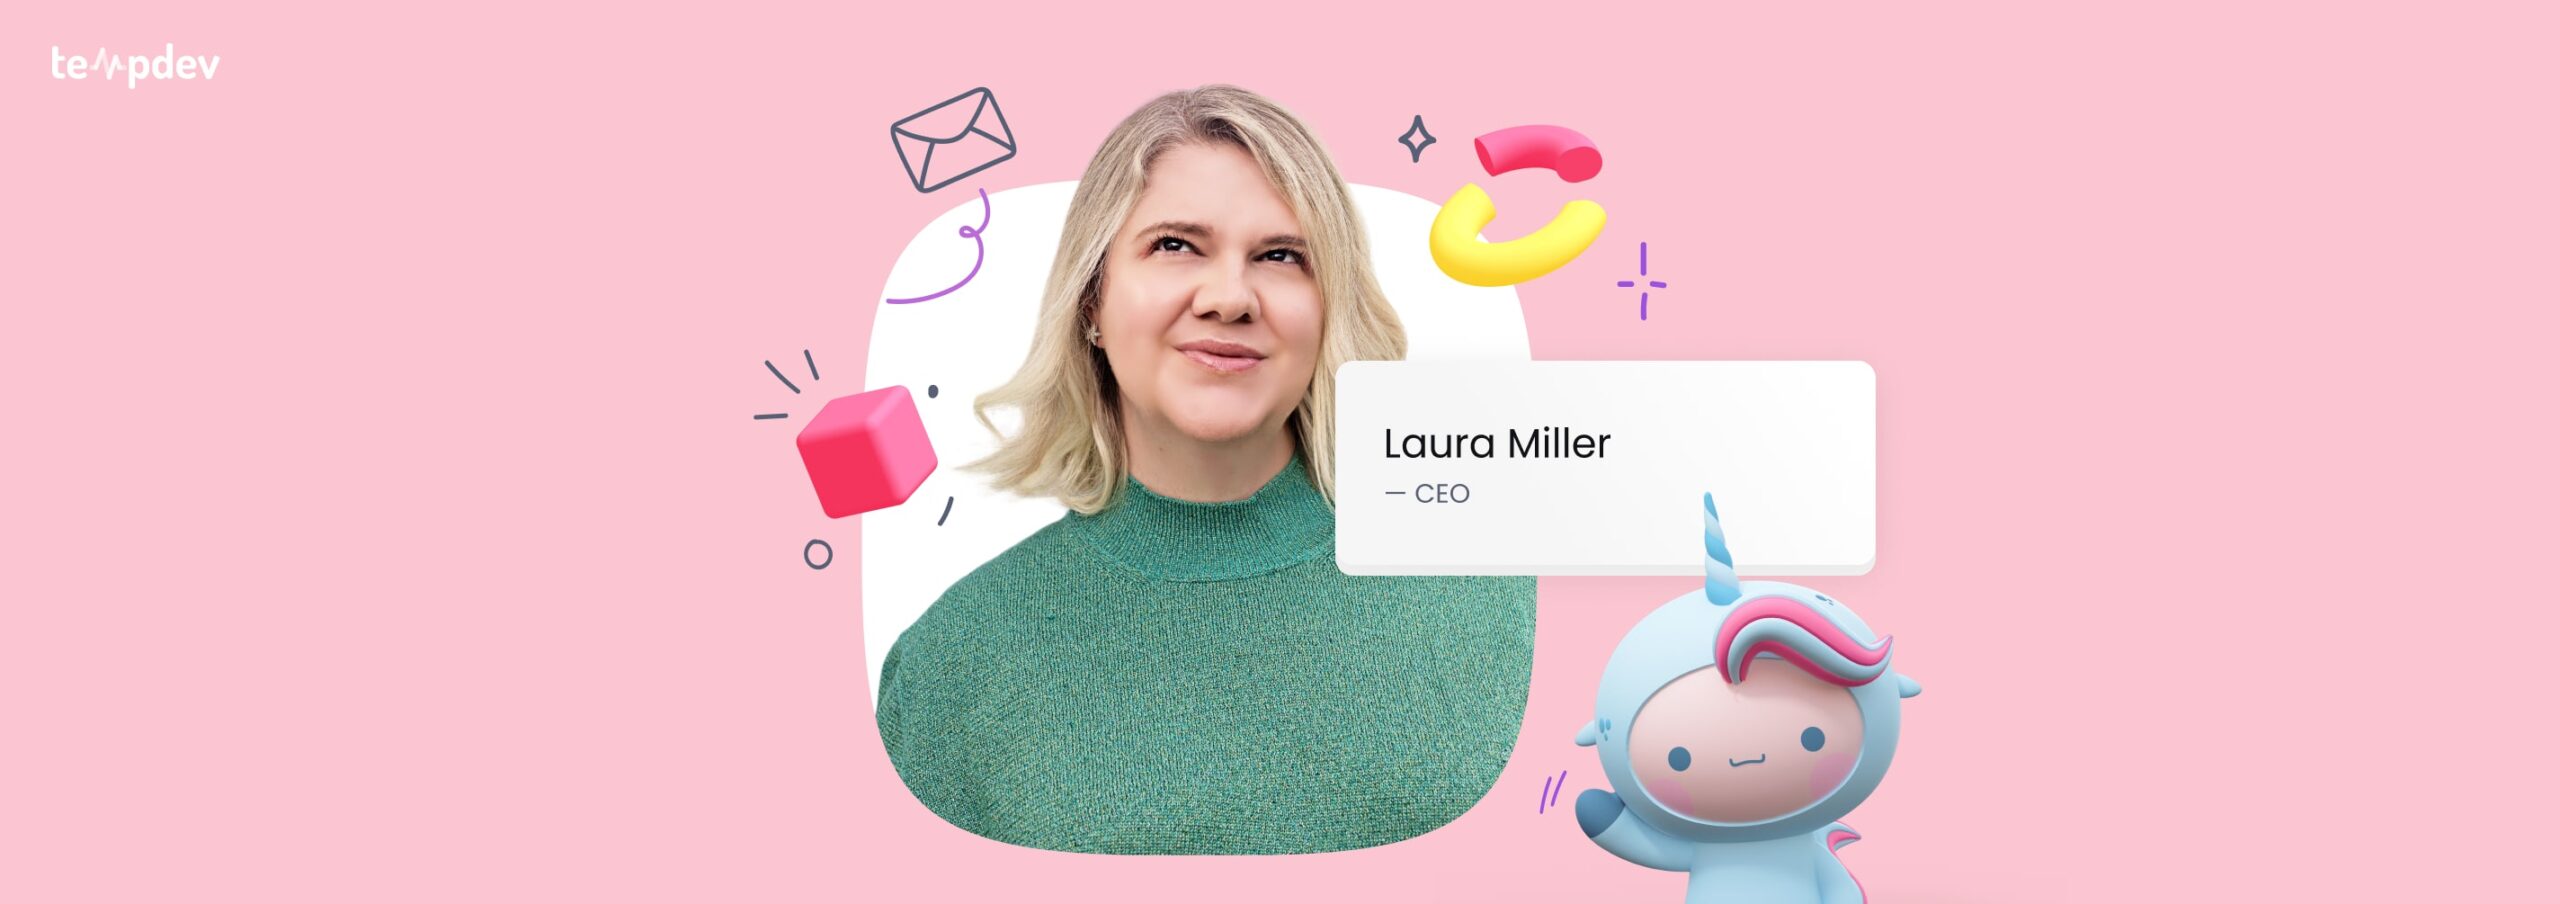 Meet Laura Miller: Founder & CEO of TempDev